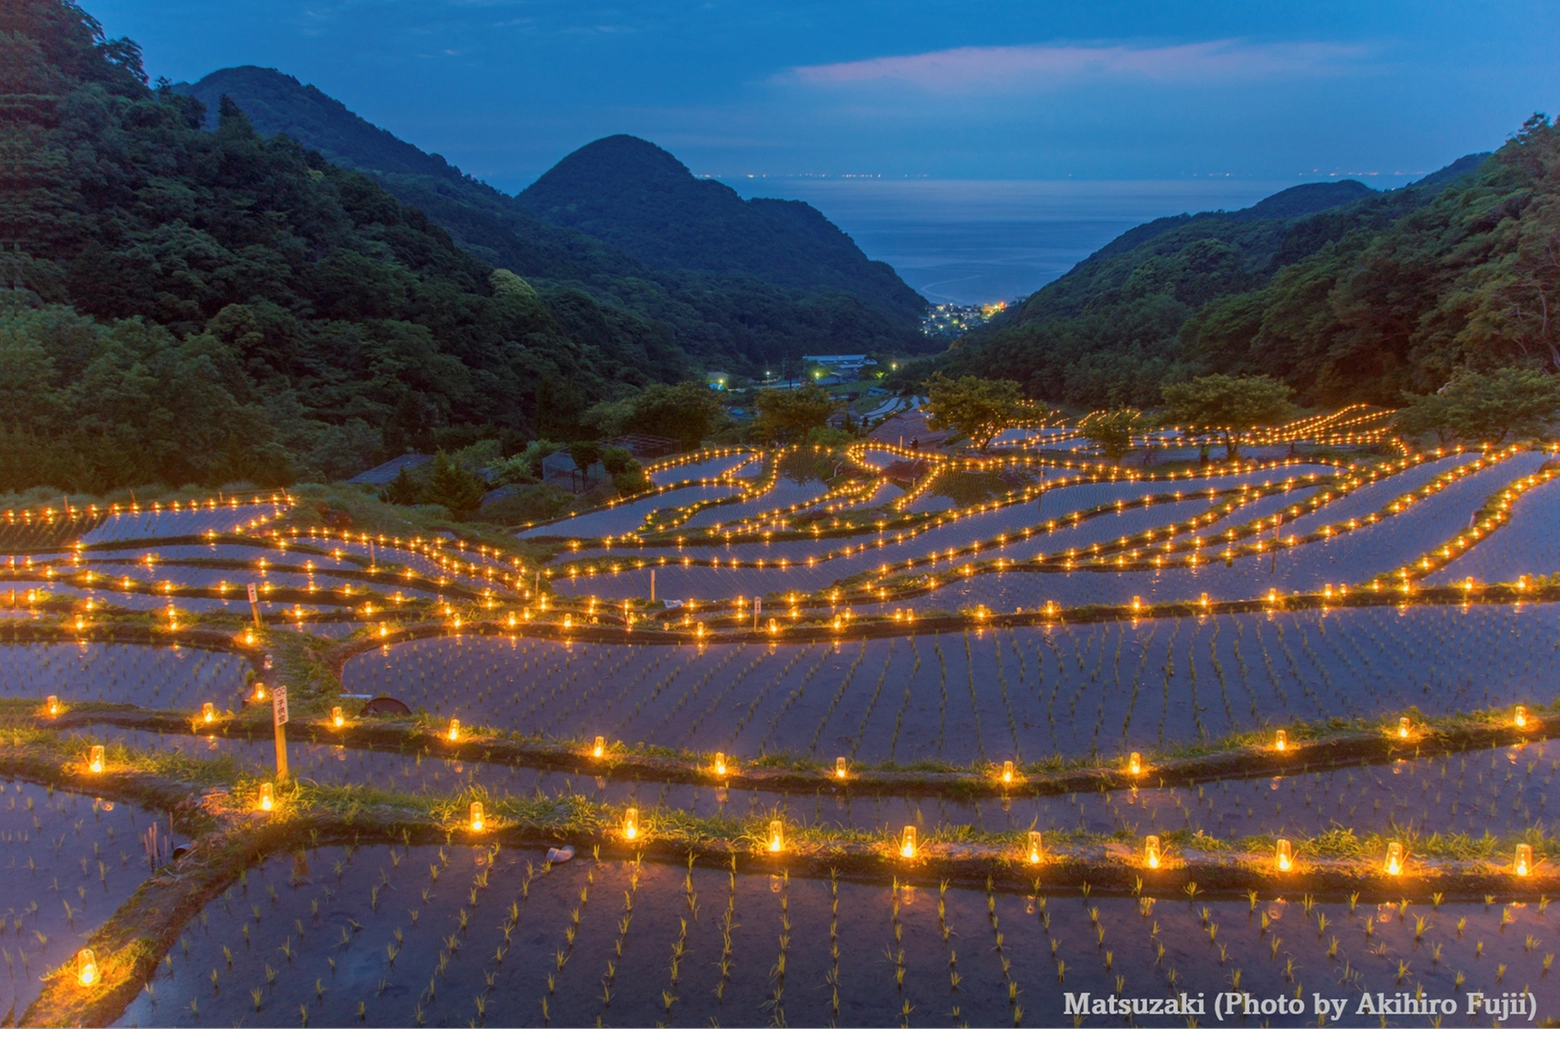 La Notte Romantica in Giappone, nel borgo di  Matsuzaki